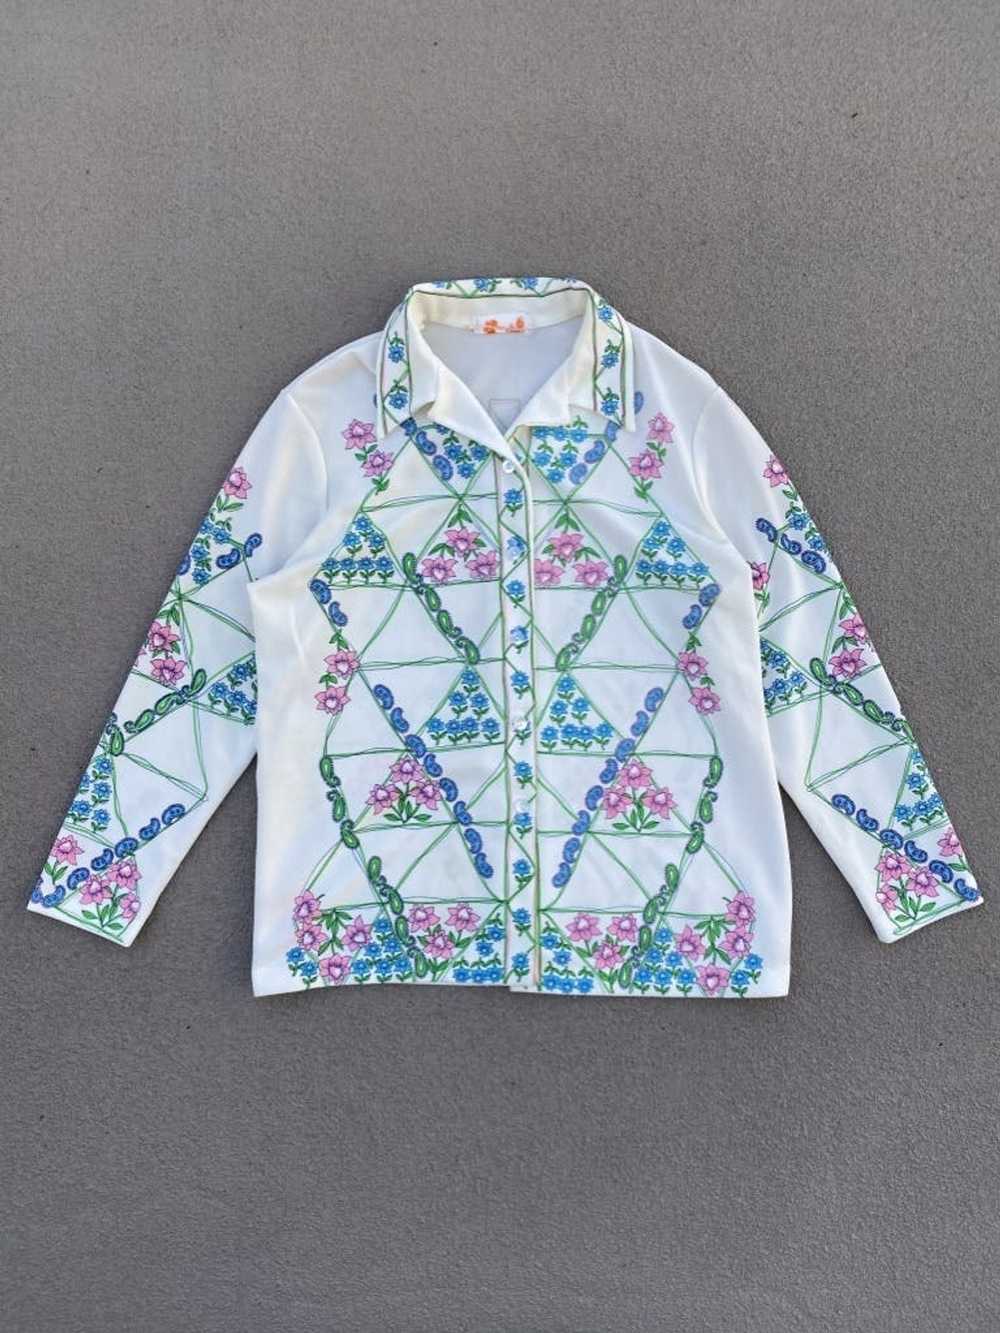 Vintage Vintage Floral Overshirt Smartique [Mediu… - image 1